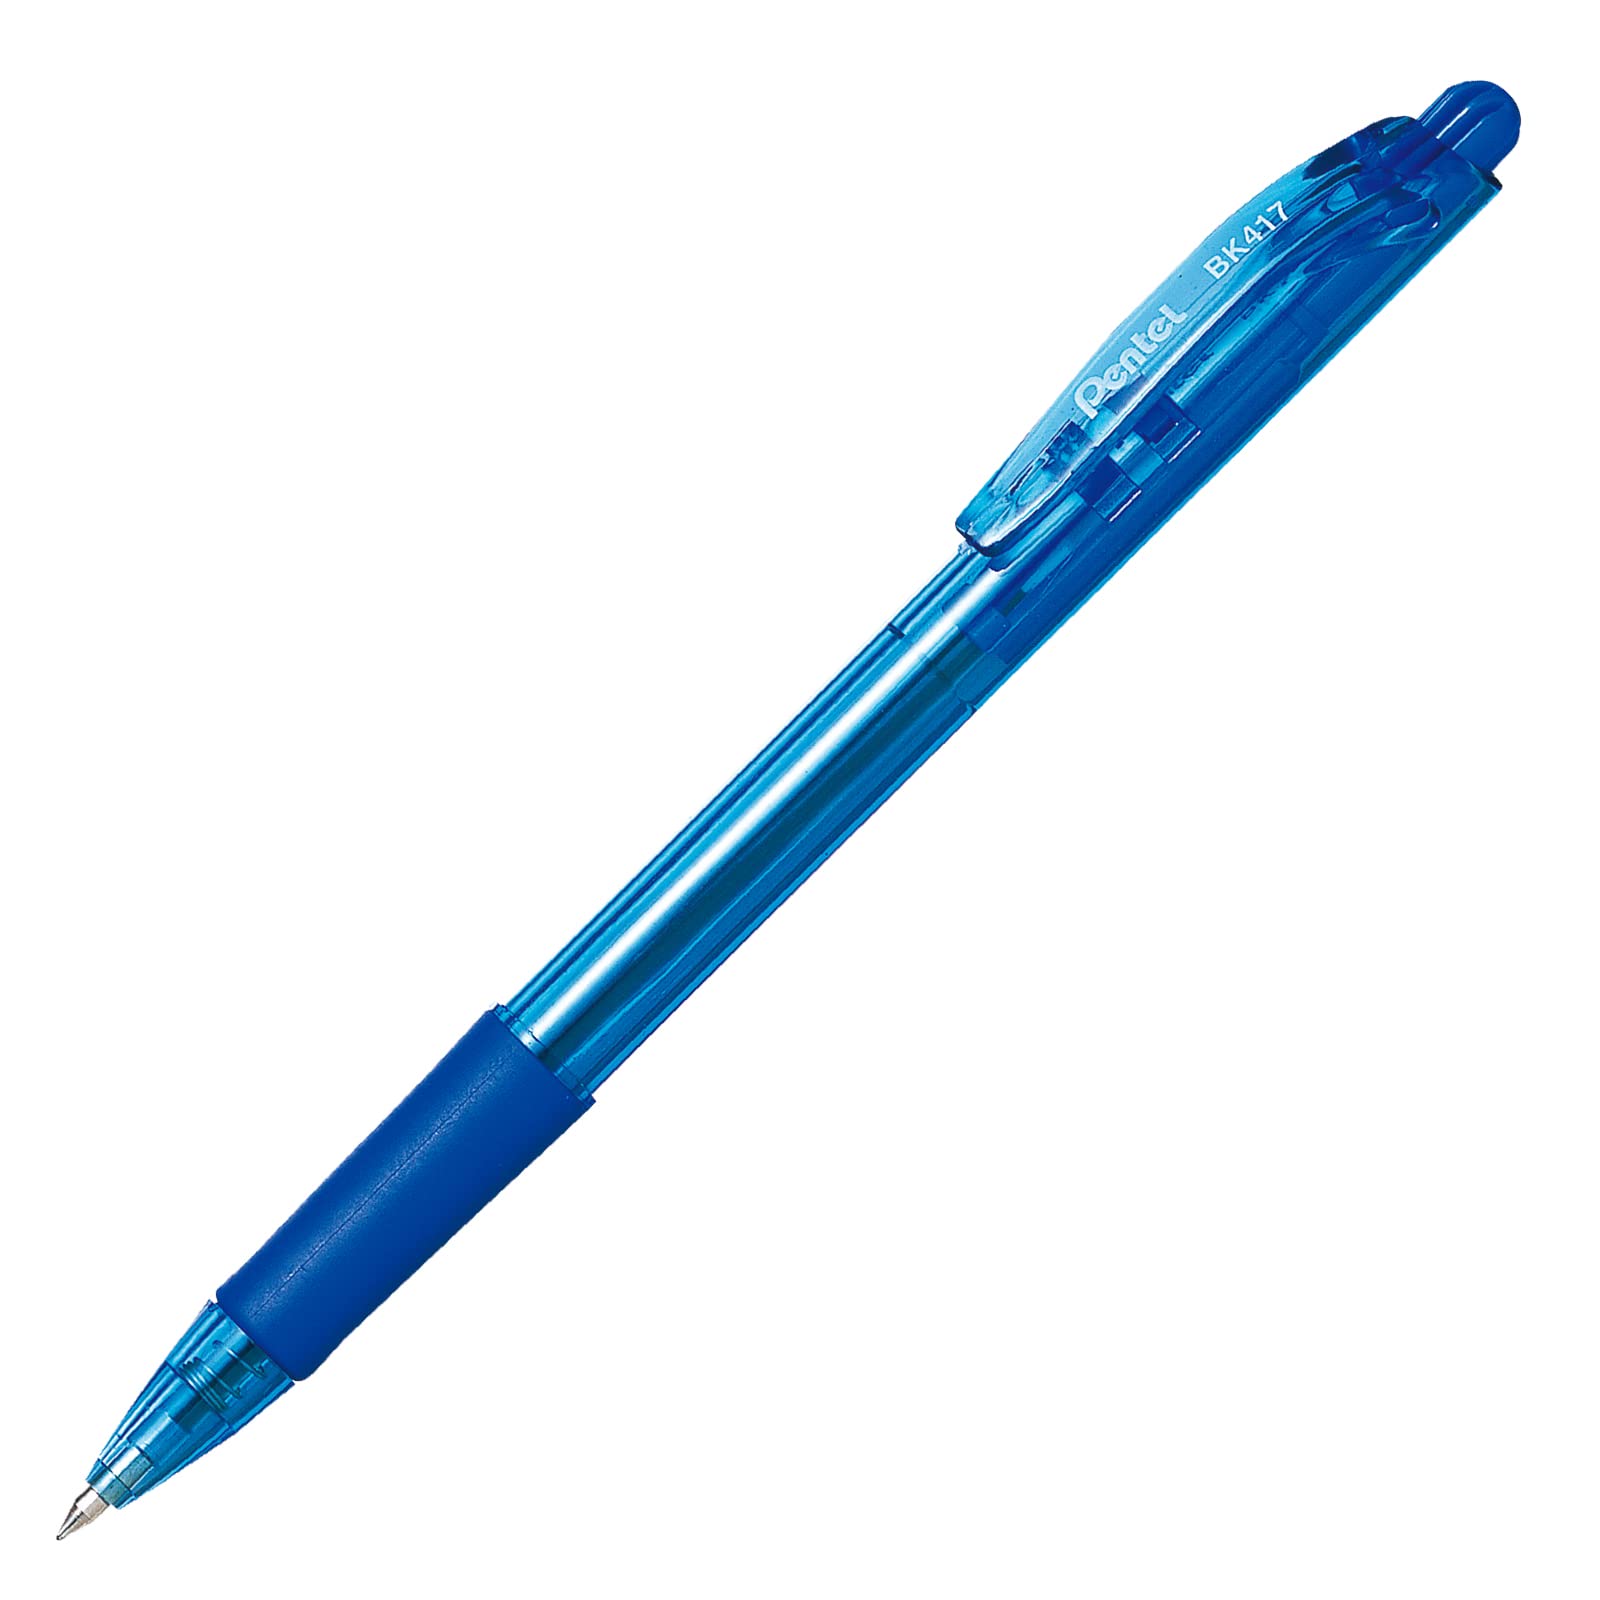 Bolígrafo Pentel wow retráctil,  punto f Bolígrafo Pentel wow retráctil color azul, punta metálica de 0.7 mm, tinta de aceite, con agarre de caucho para una escritura mas cómoda, el cuerpo indica el color de la tinta                                                                                 ino 0.7 mm, color azul, 1 pieza          - BK417-C